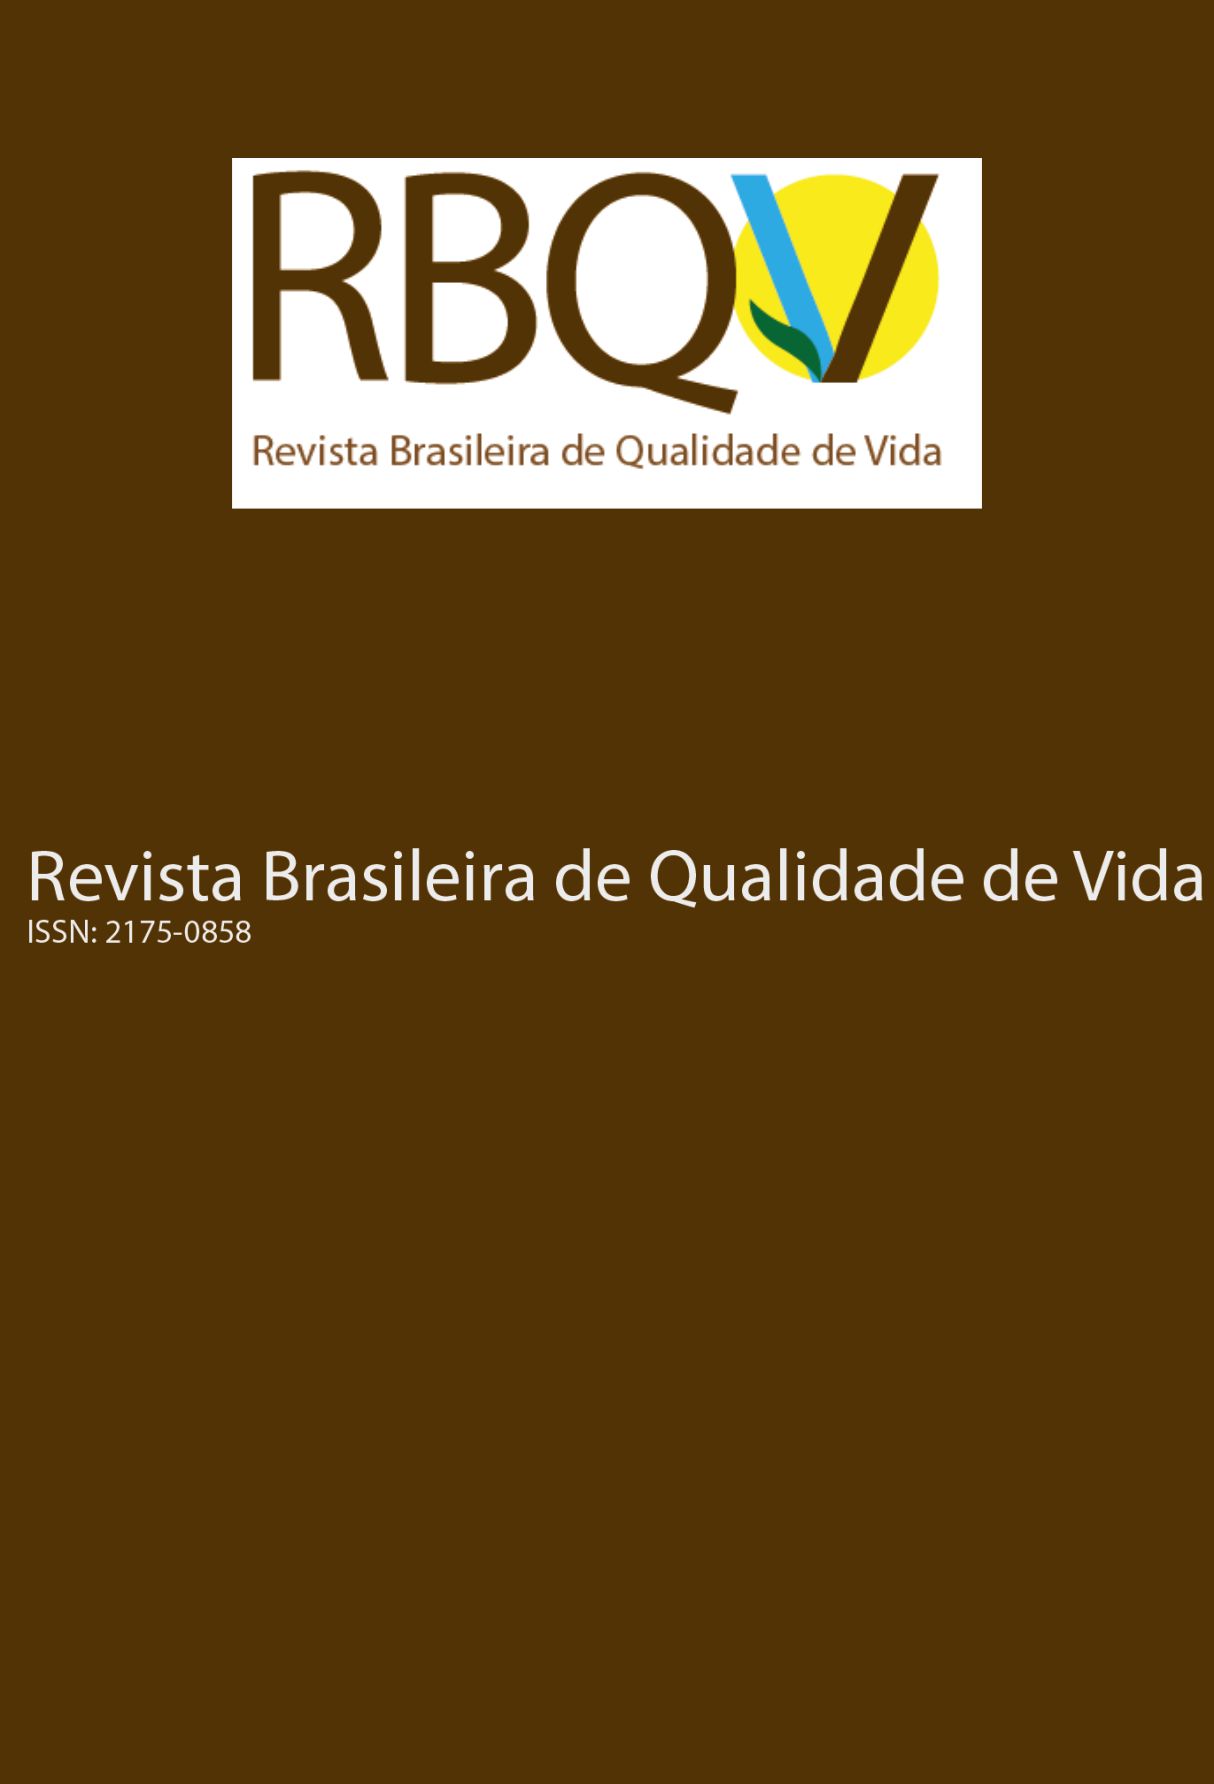 Capa: Revista Brasileira de Qualidade de Vida